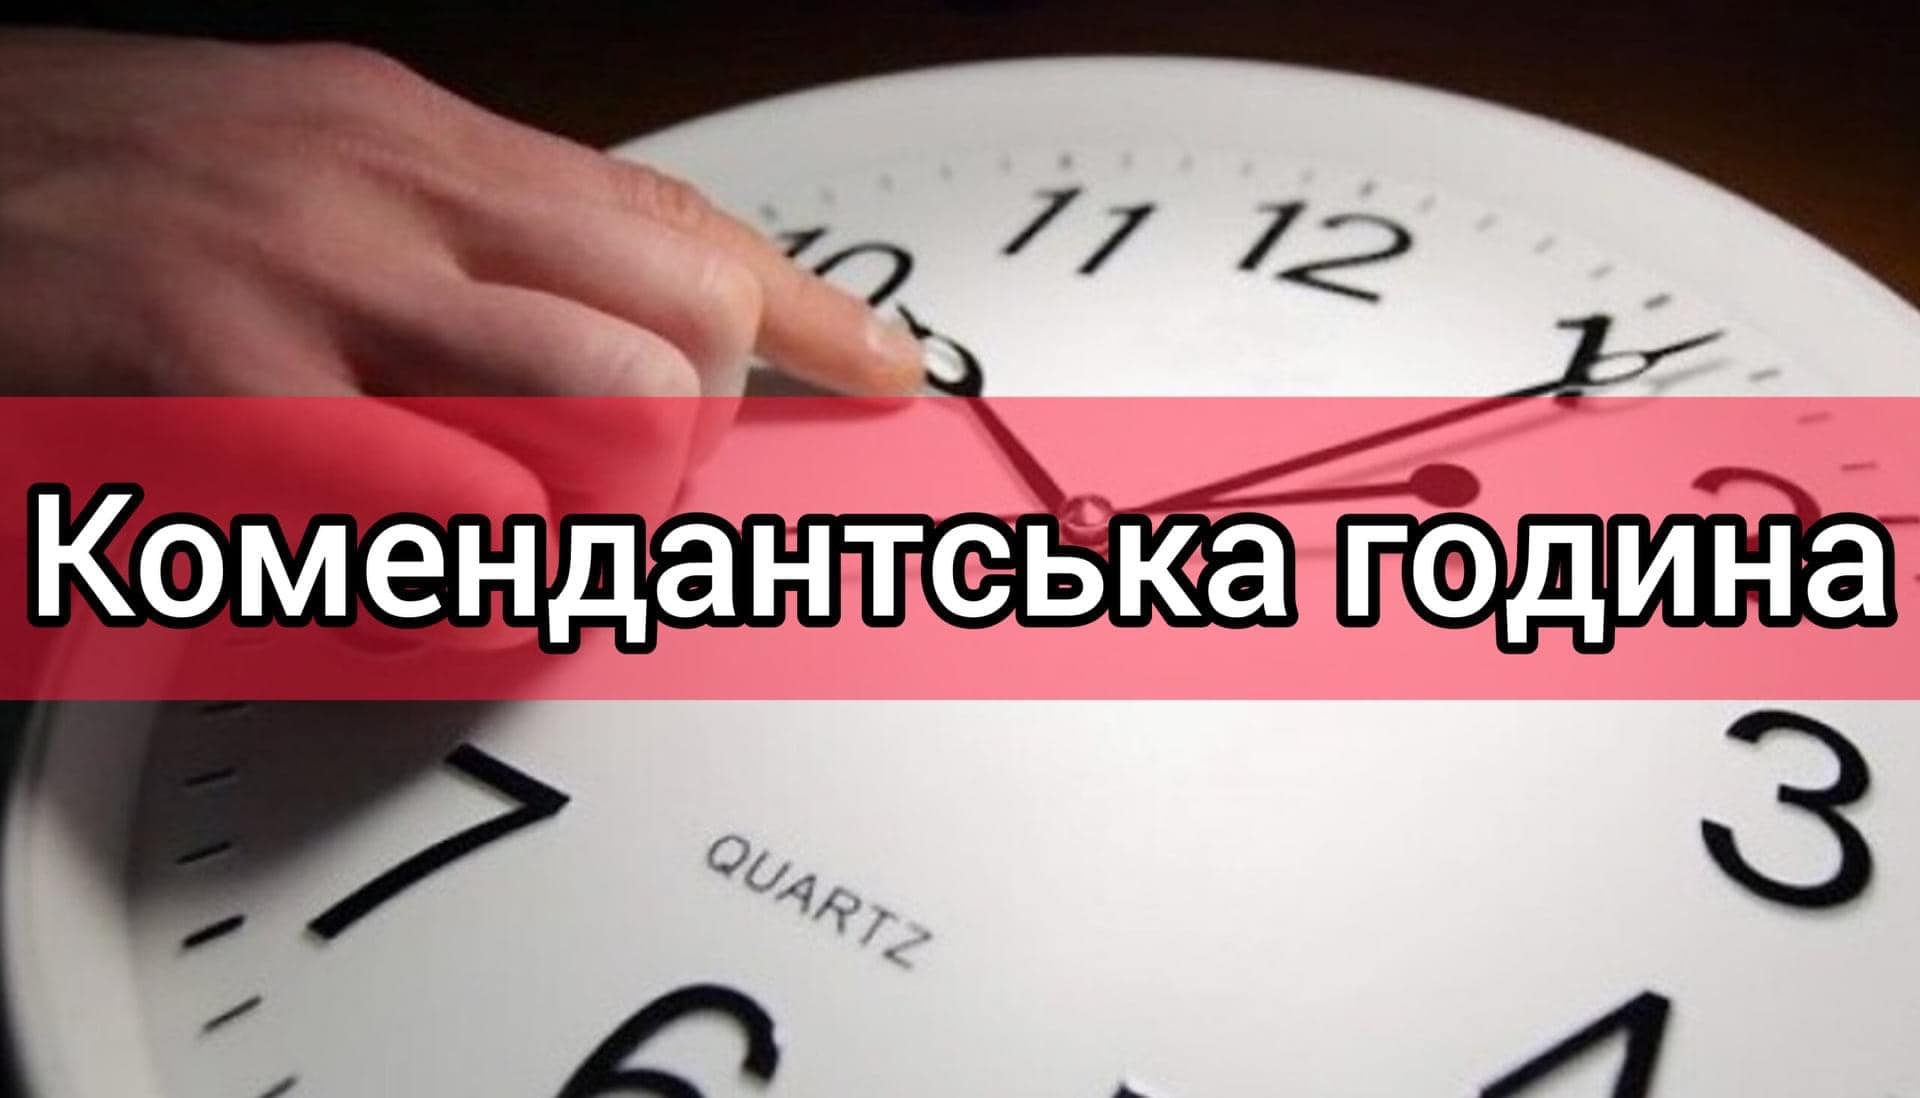 З 1 грудня комендантська година на Миколаївщині, окрім декількох громад, буде з 00:00 до 05:00 (ДОКУМЕНТ) 11